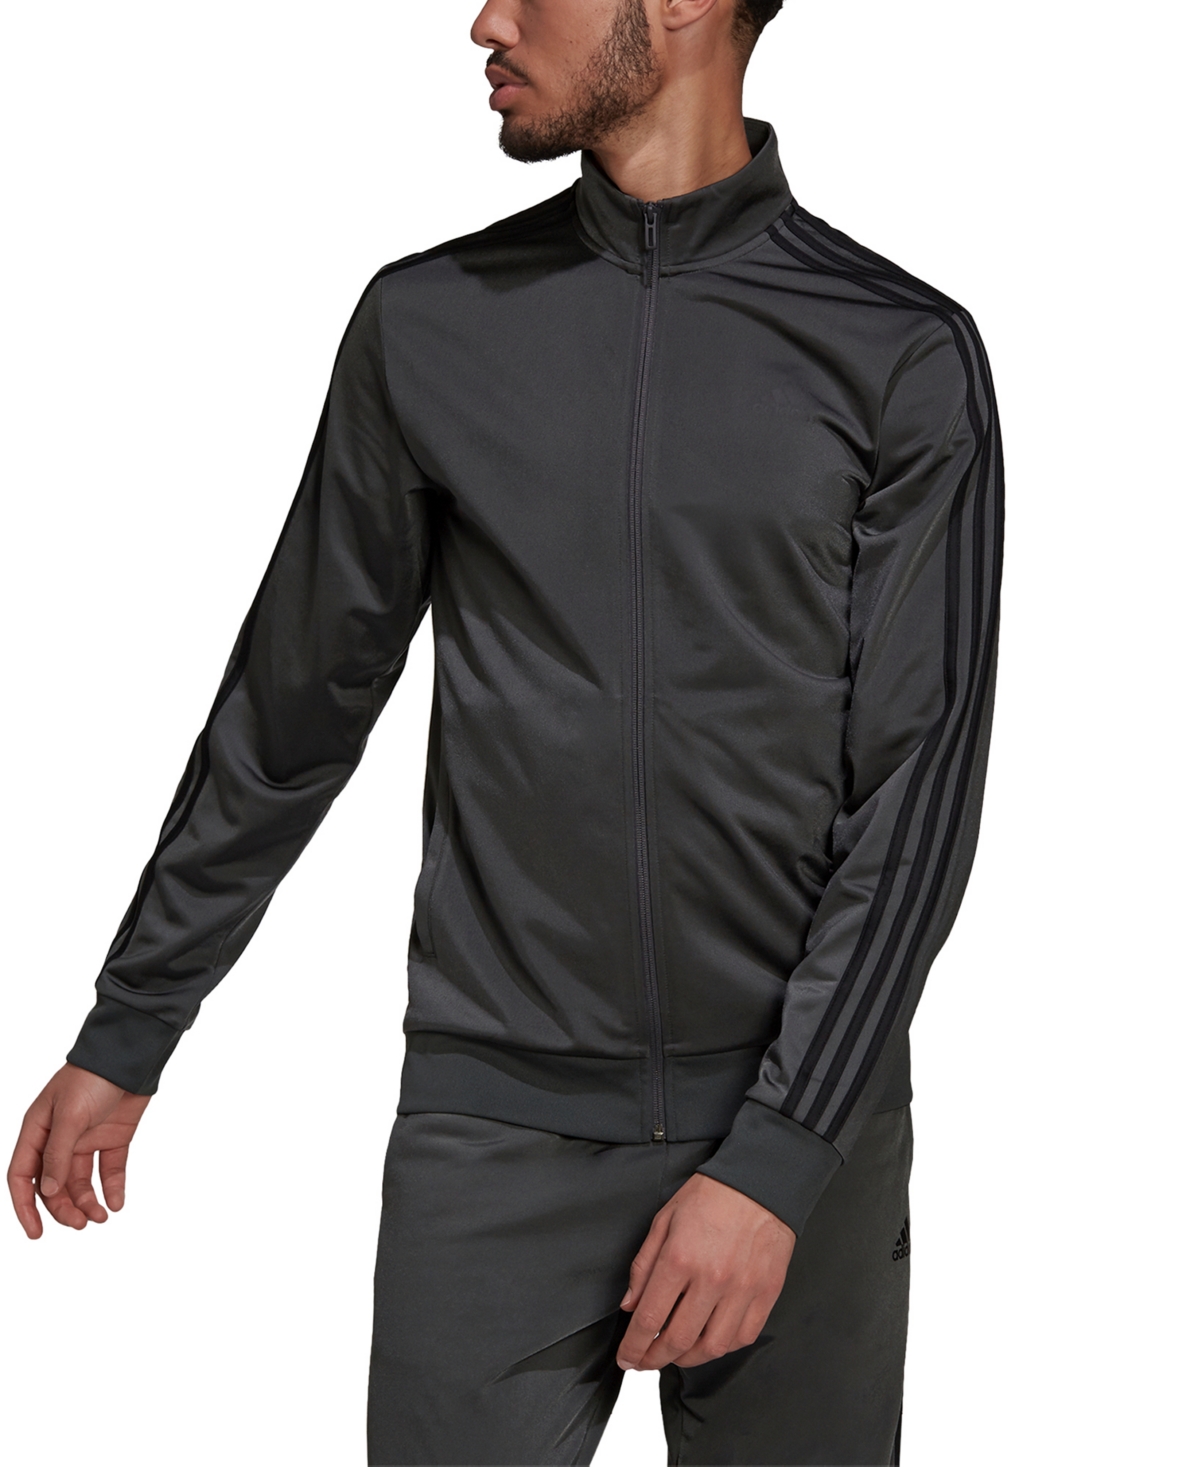 Adidas Originals Men's Tricot Track Jacket In Dark Grey Heather,black